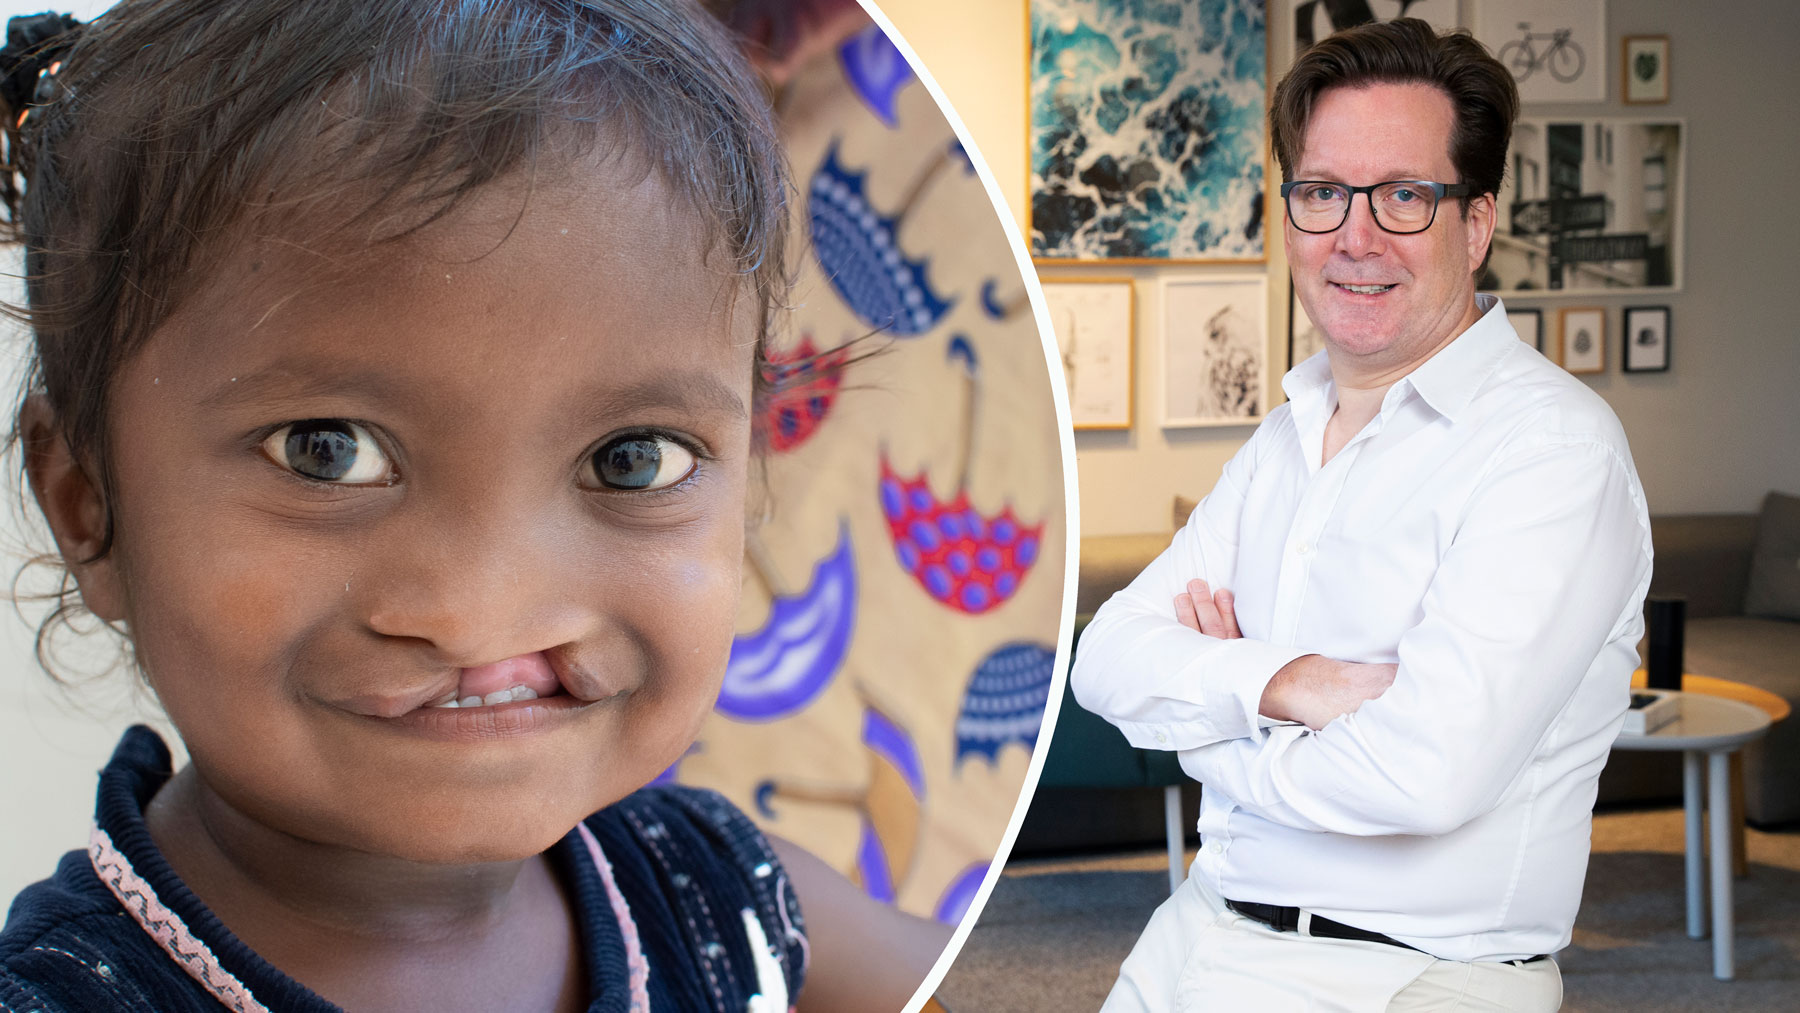 En enkel operation gör skillnad i barns liv – och ny stolthet på jobbet, menar Martin Forsling, vd på Bontouch. Foto: Operation Smile, Martina Huber